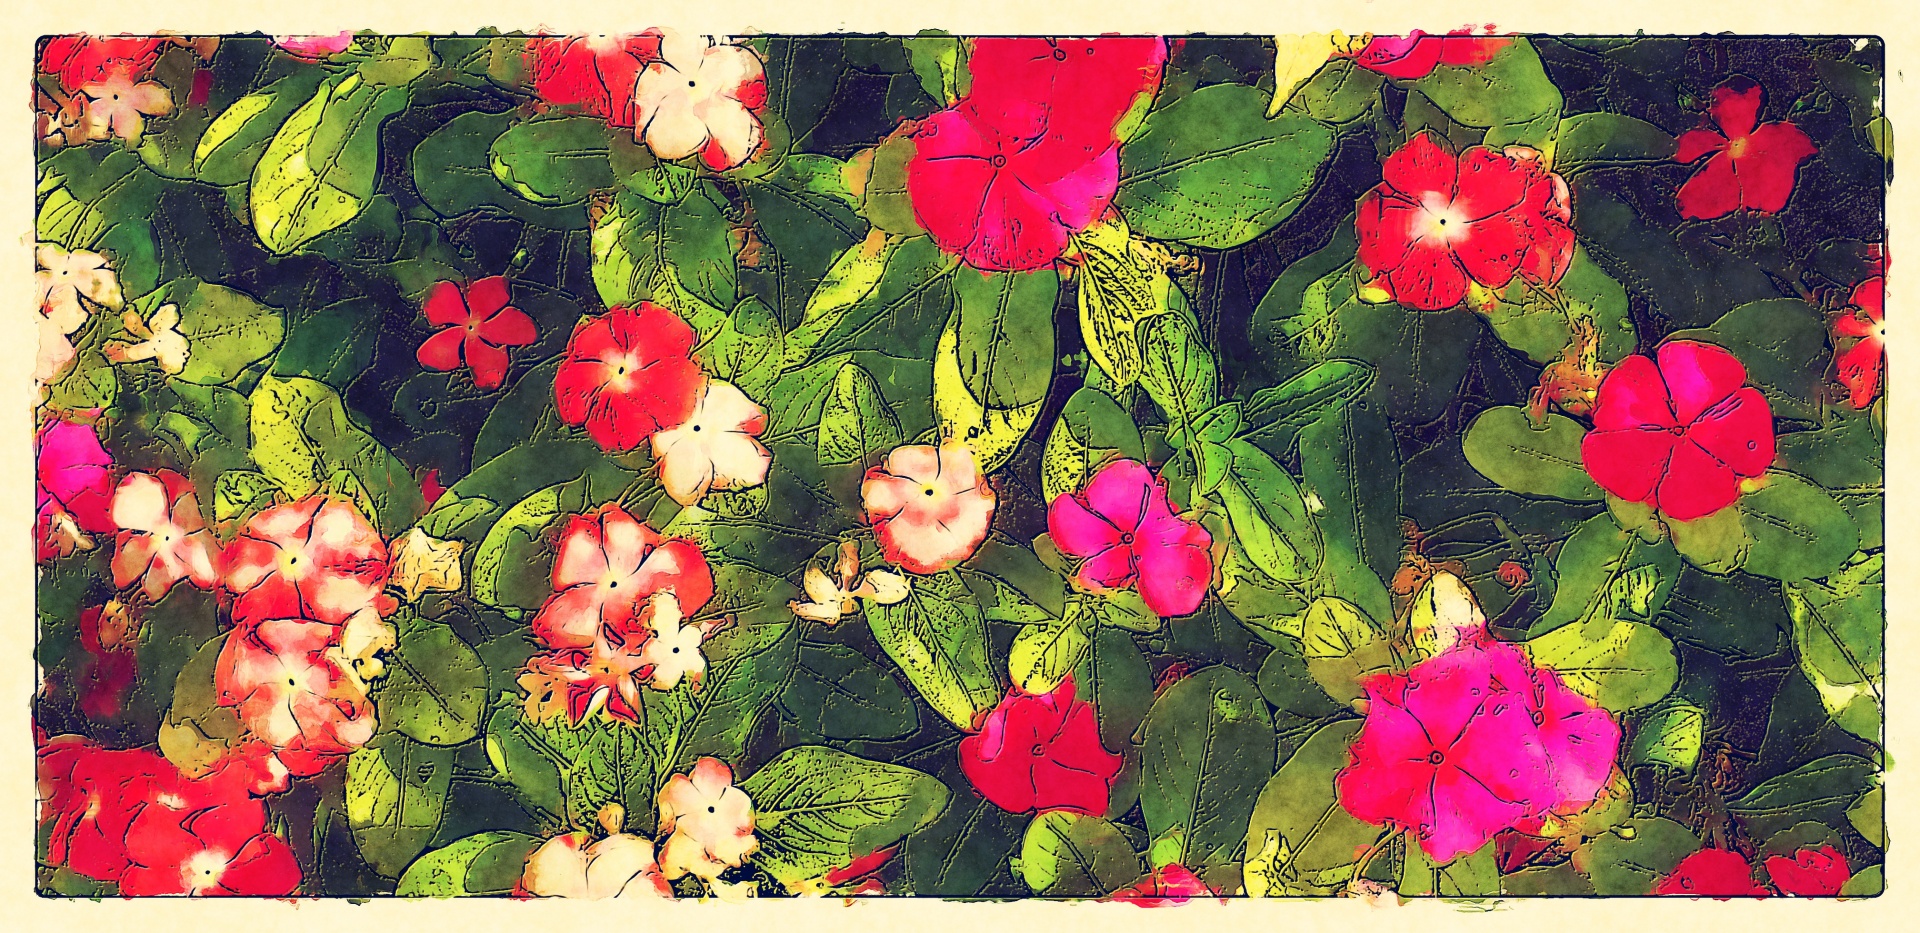 Flores Impatiens rosa-vermelhas